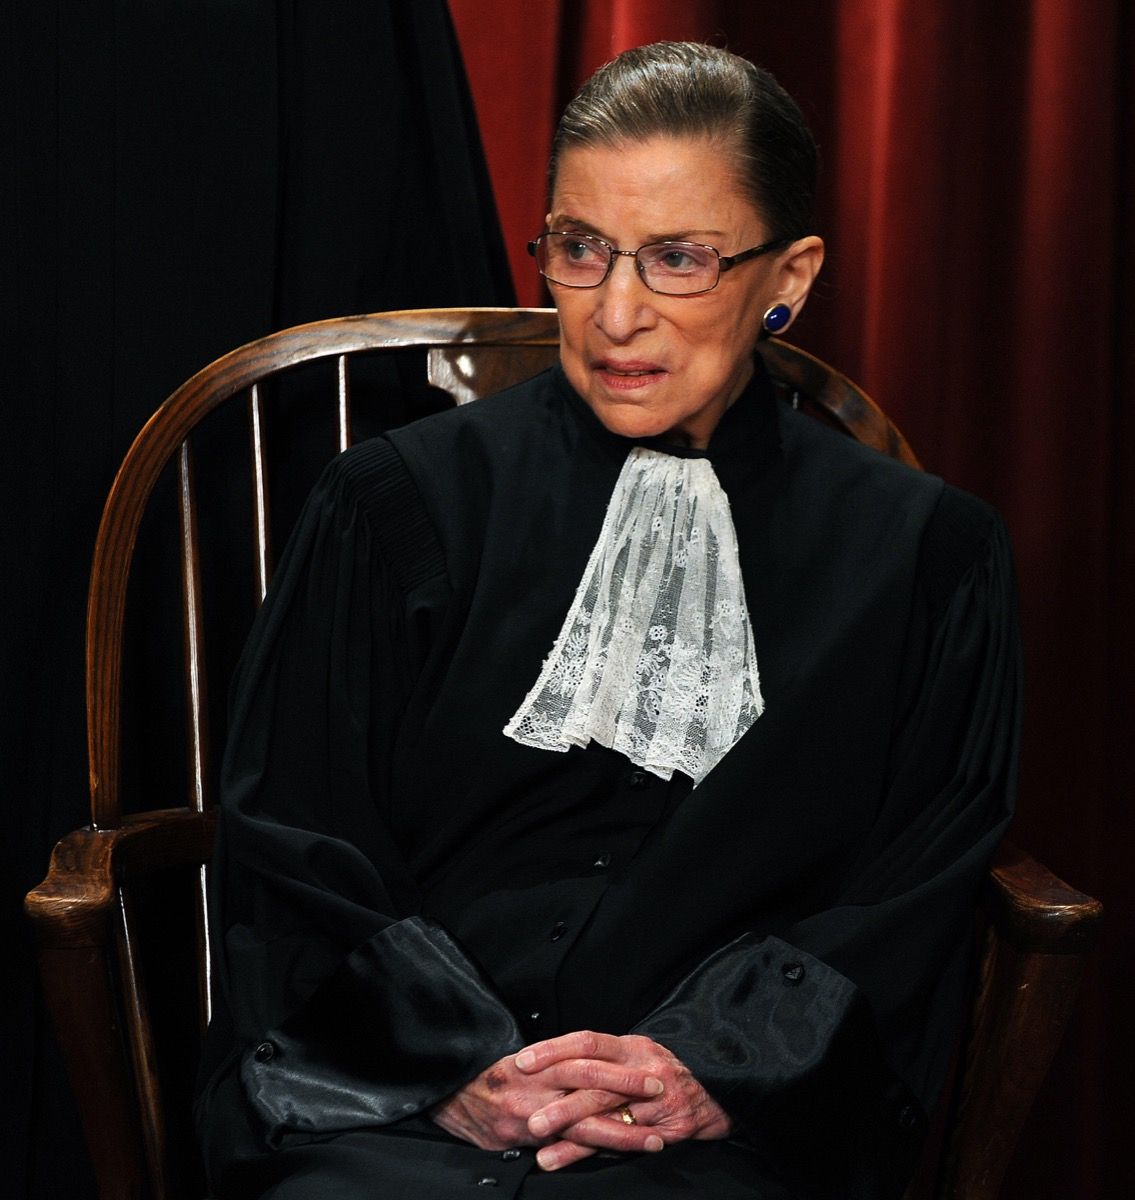 Ruth Bader Ginsburg, Associate Justice Ruth Bader Ginsburg at ang mga Mahistrado ng Korte Suprema ng Estados Unidos